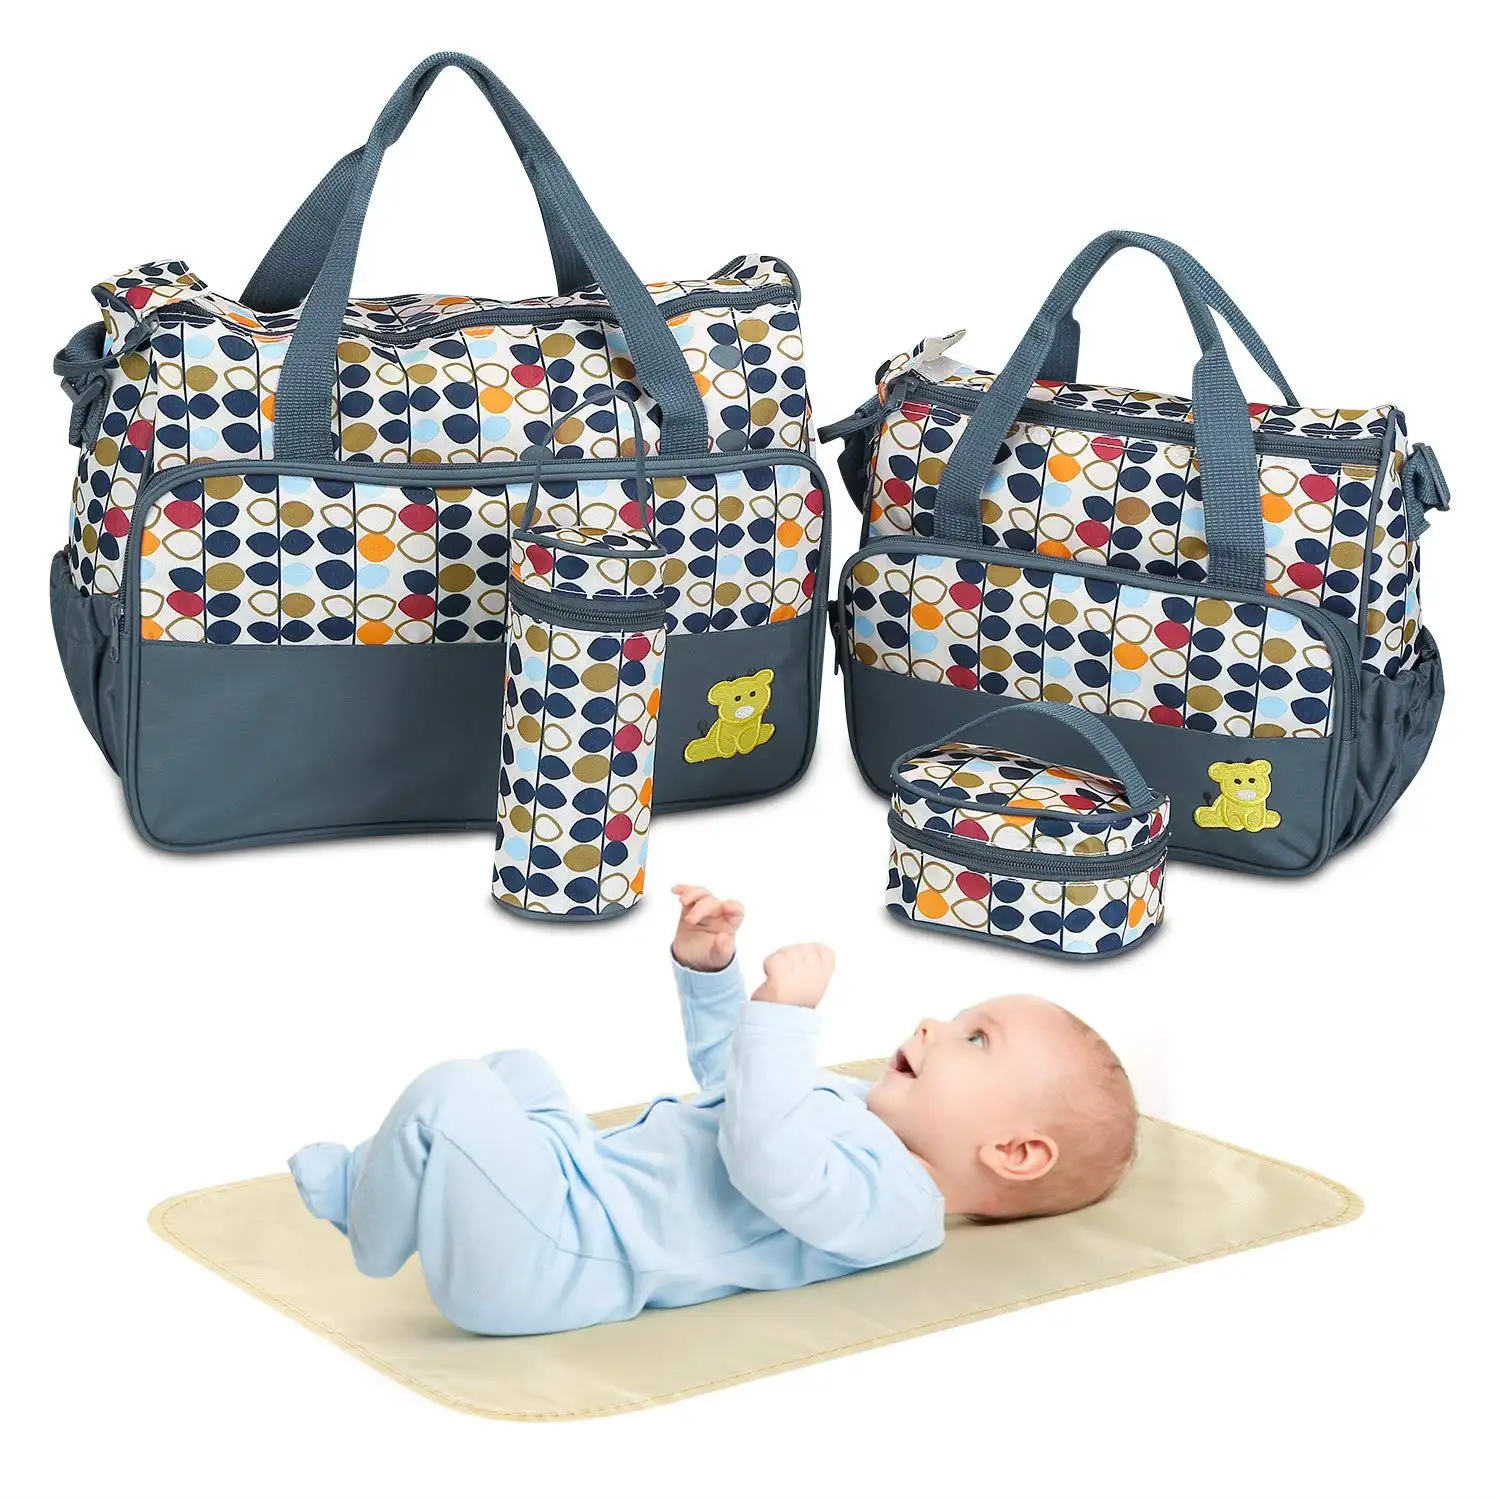 FREE SAMPLE Diaper Bag Tote Set Baby Bags for Mom